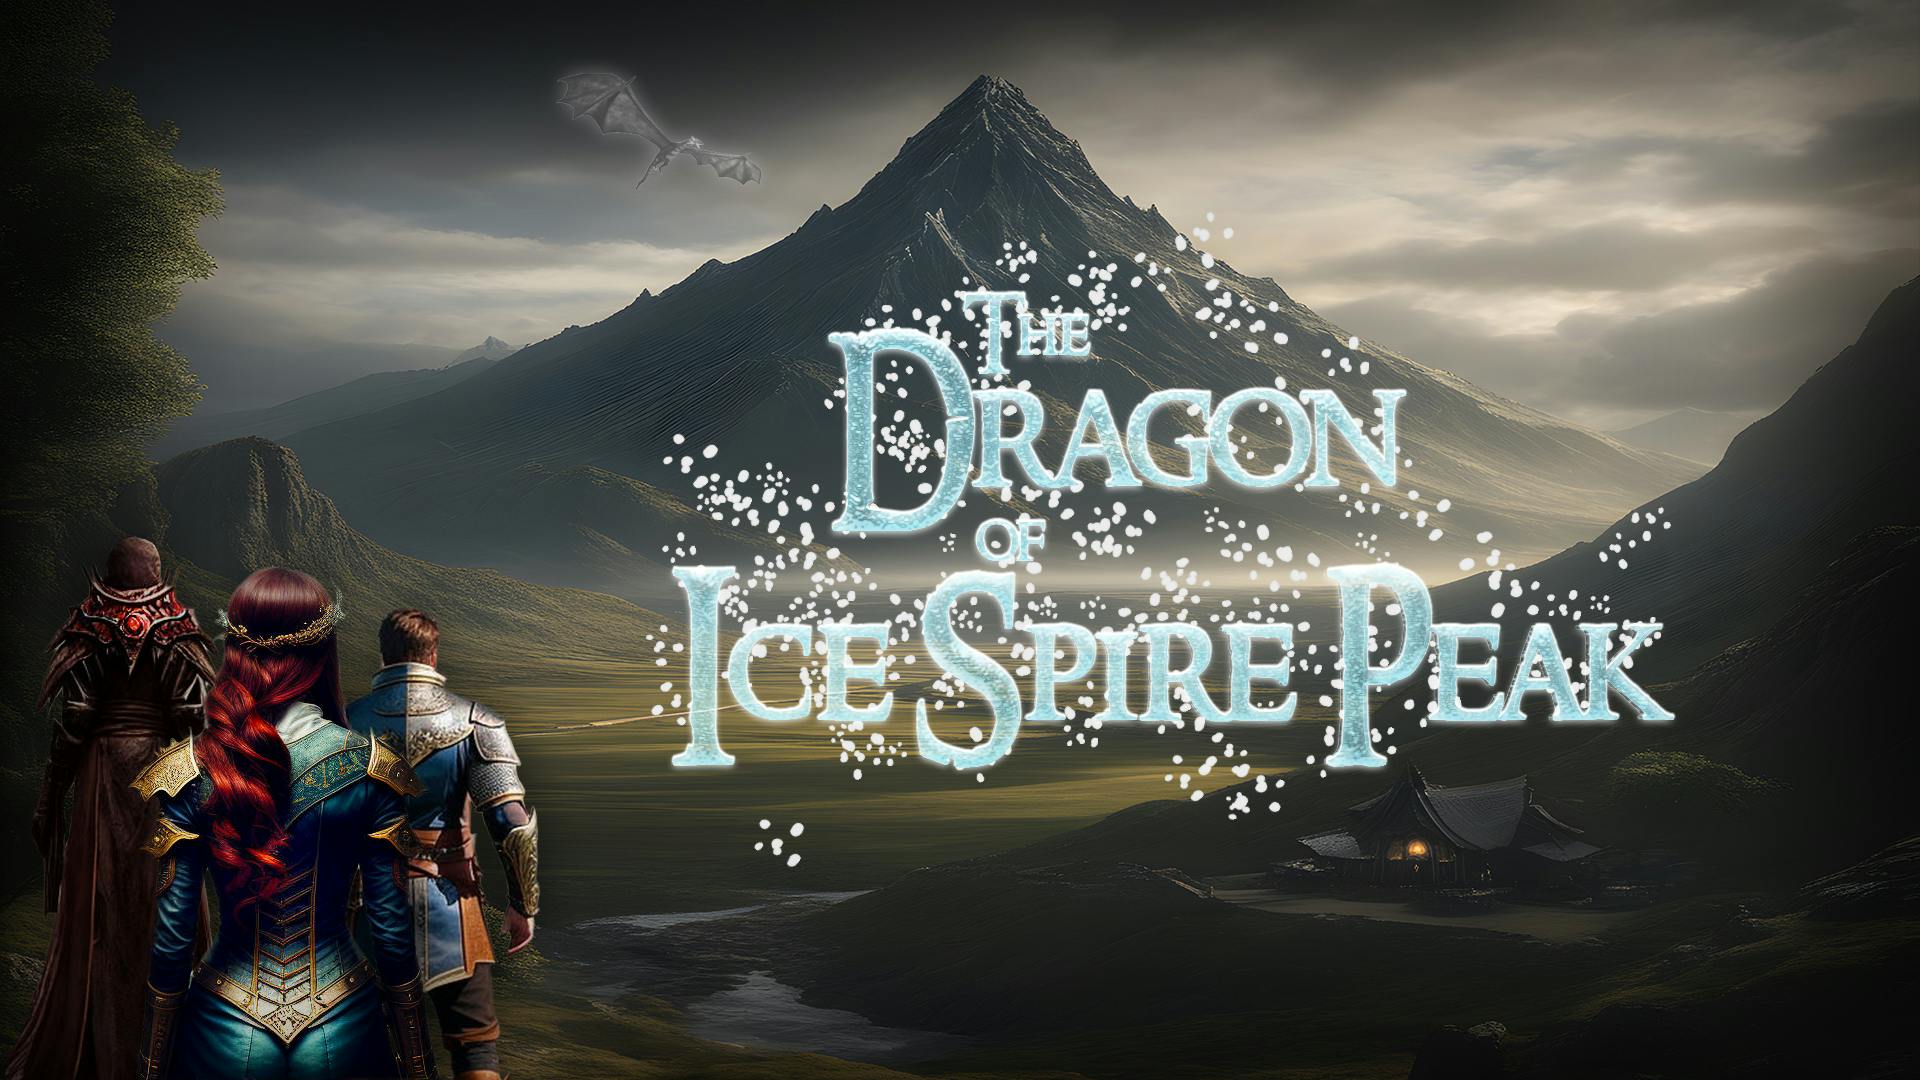 The Dragon of Ice Spire Peak (5e, beginner friendly!)